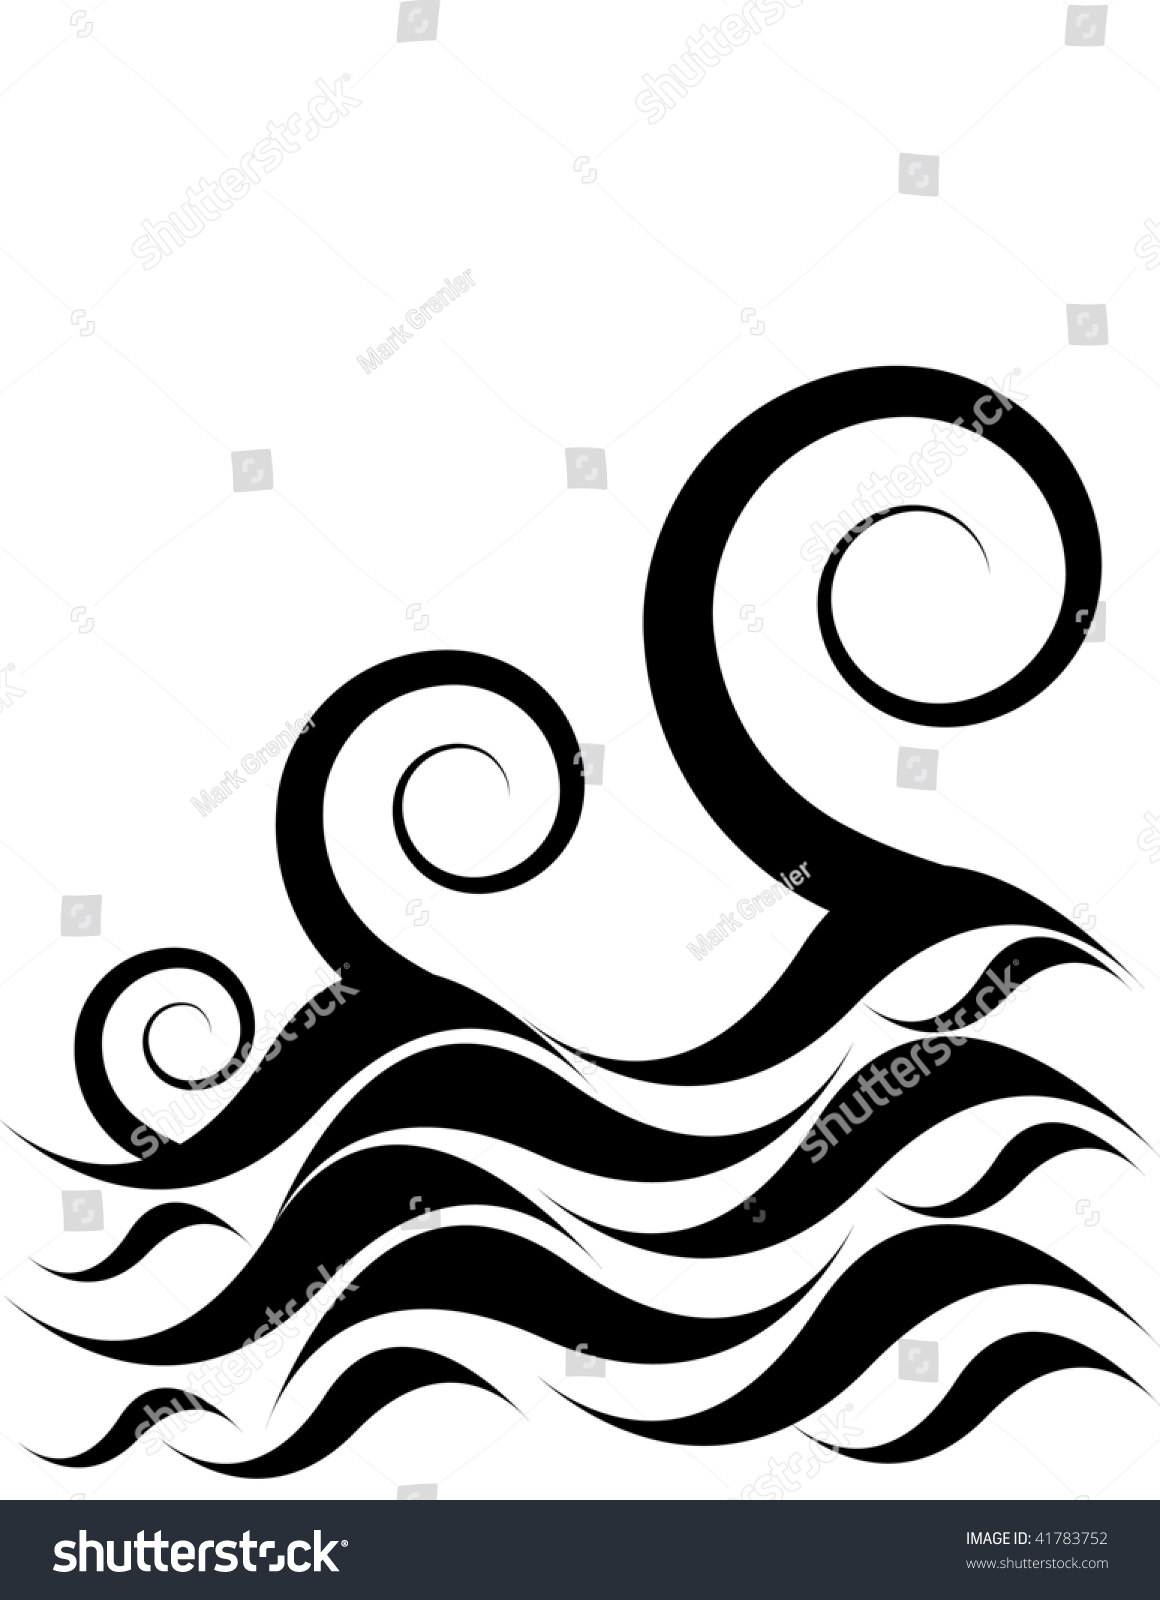 Ocean Waves Stock Vector Illustration 41783752 : Shutterstock